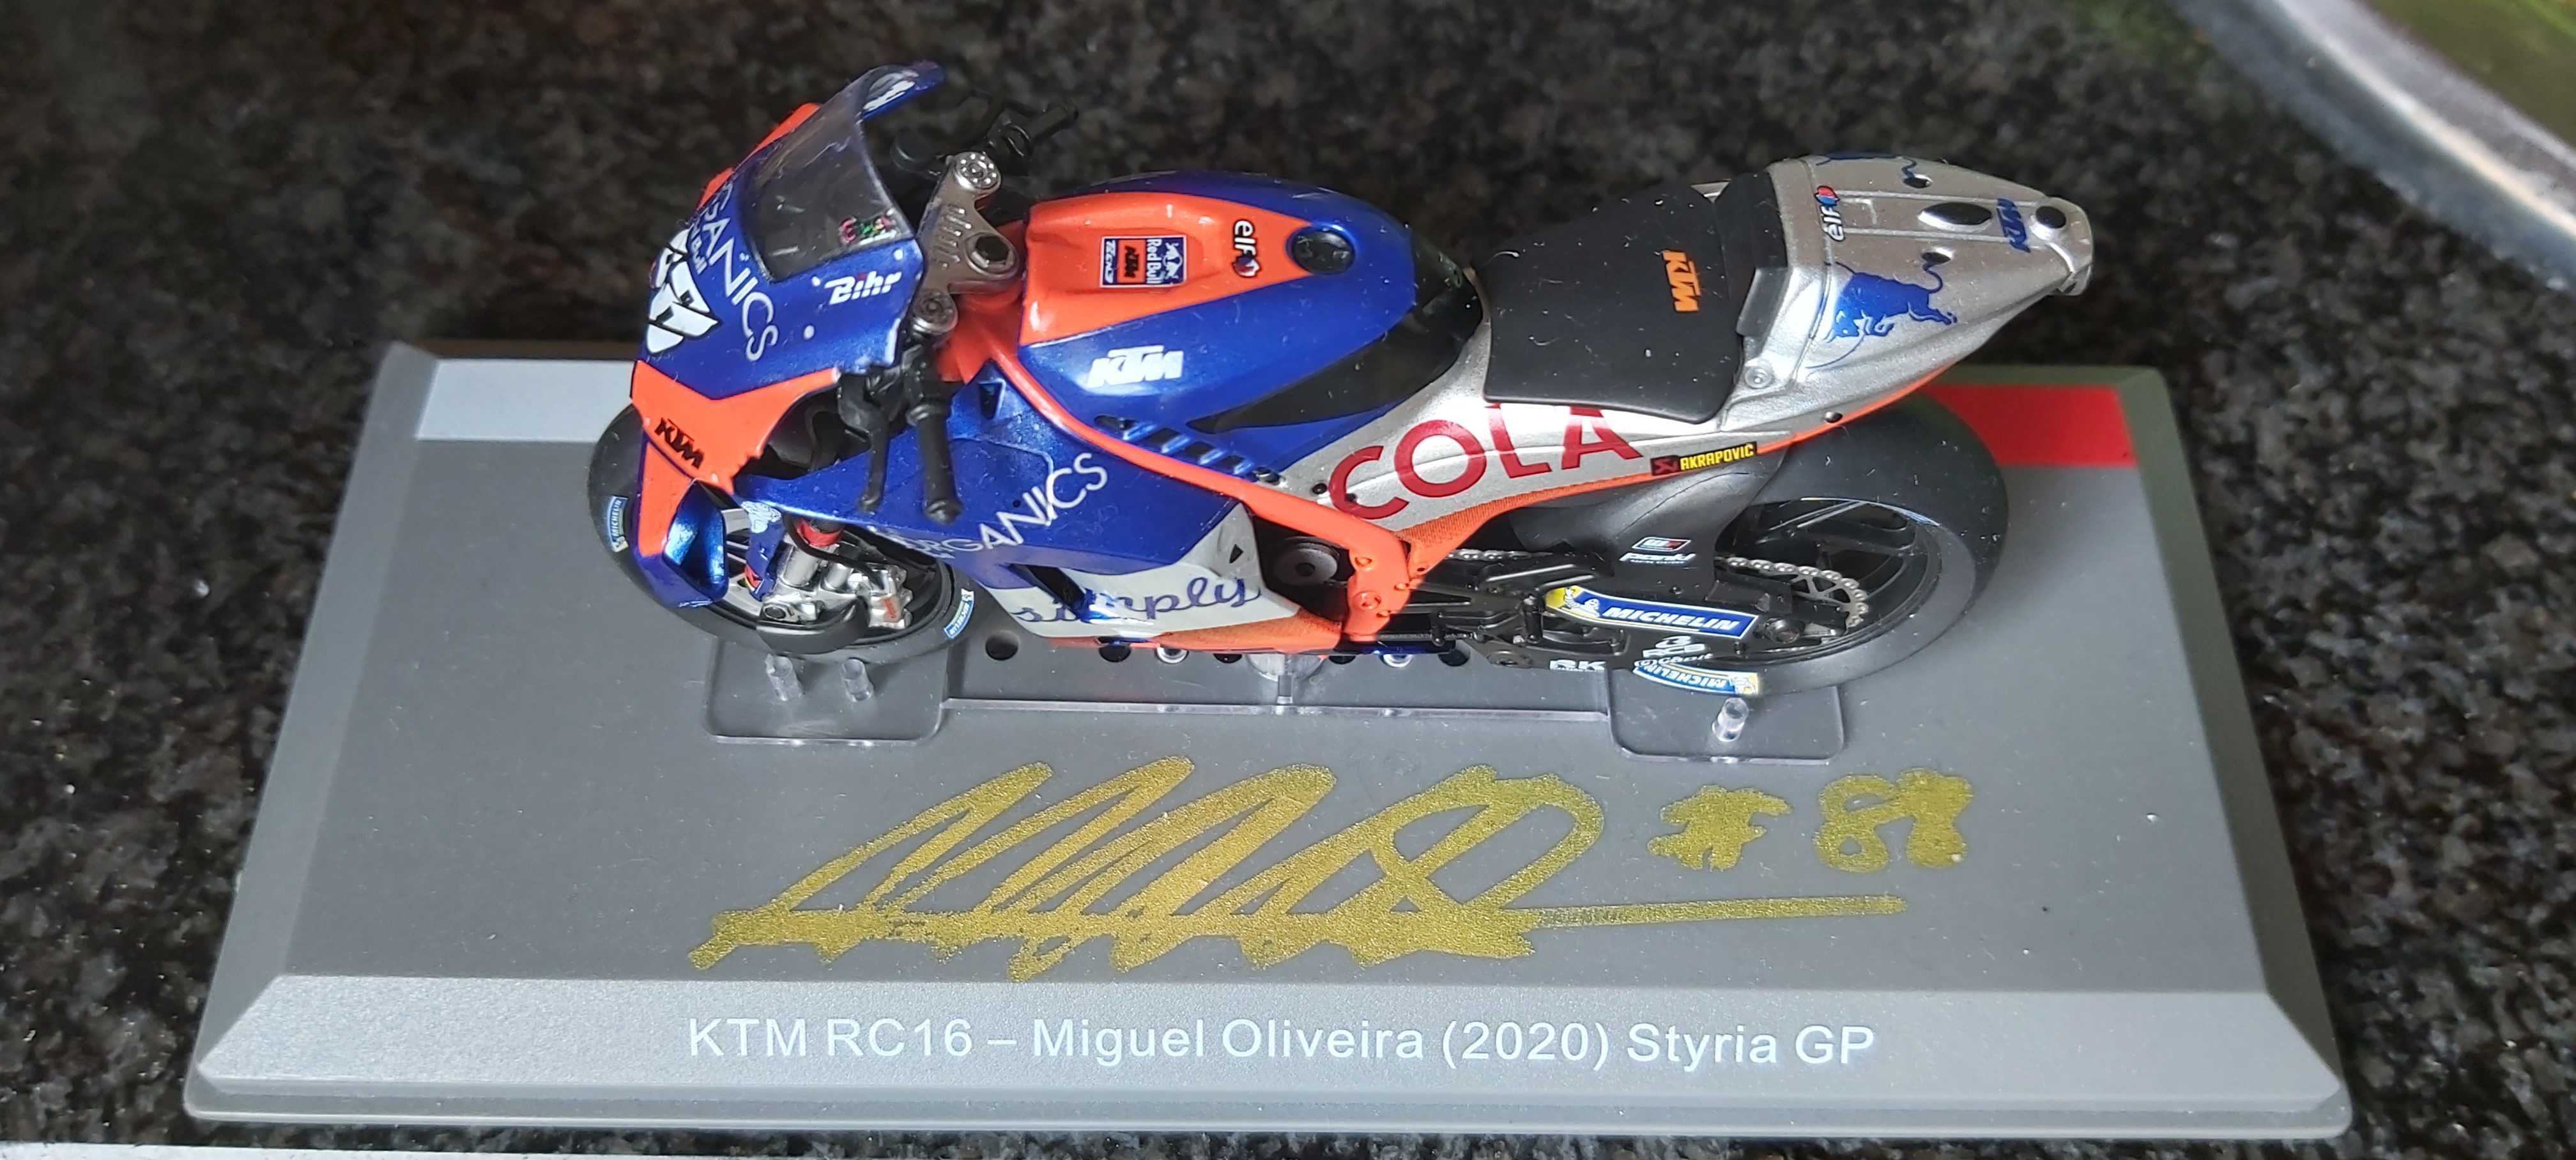 Moto Miguel Oliveira autografada pelo próprio